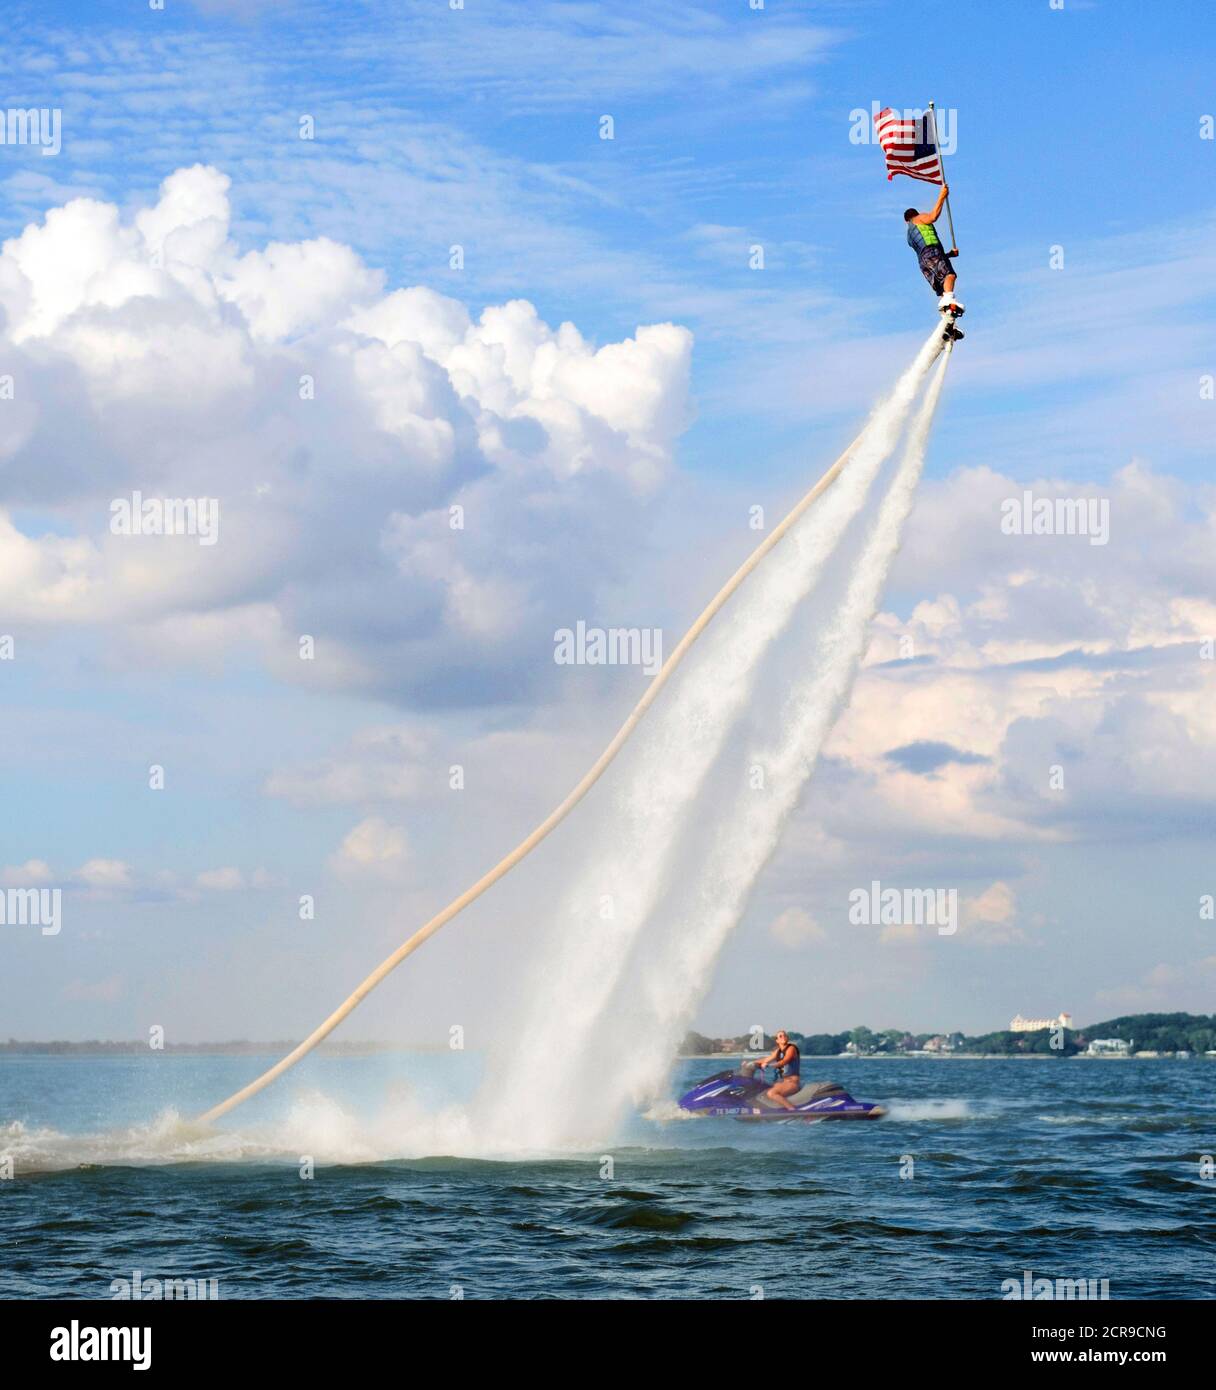 Rocket Man volare su una Jet Fly Board al lago Arlington, Texas e tenendo una bandiera americana. Foto Stock